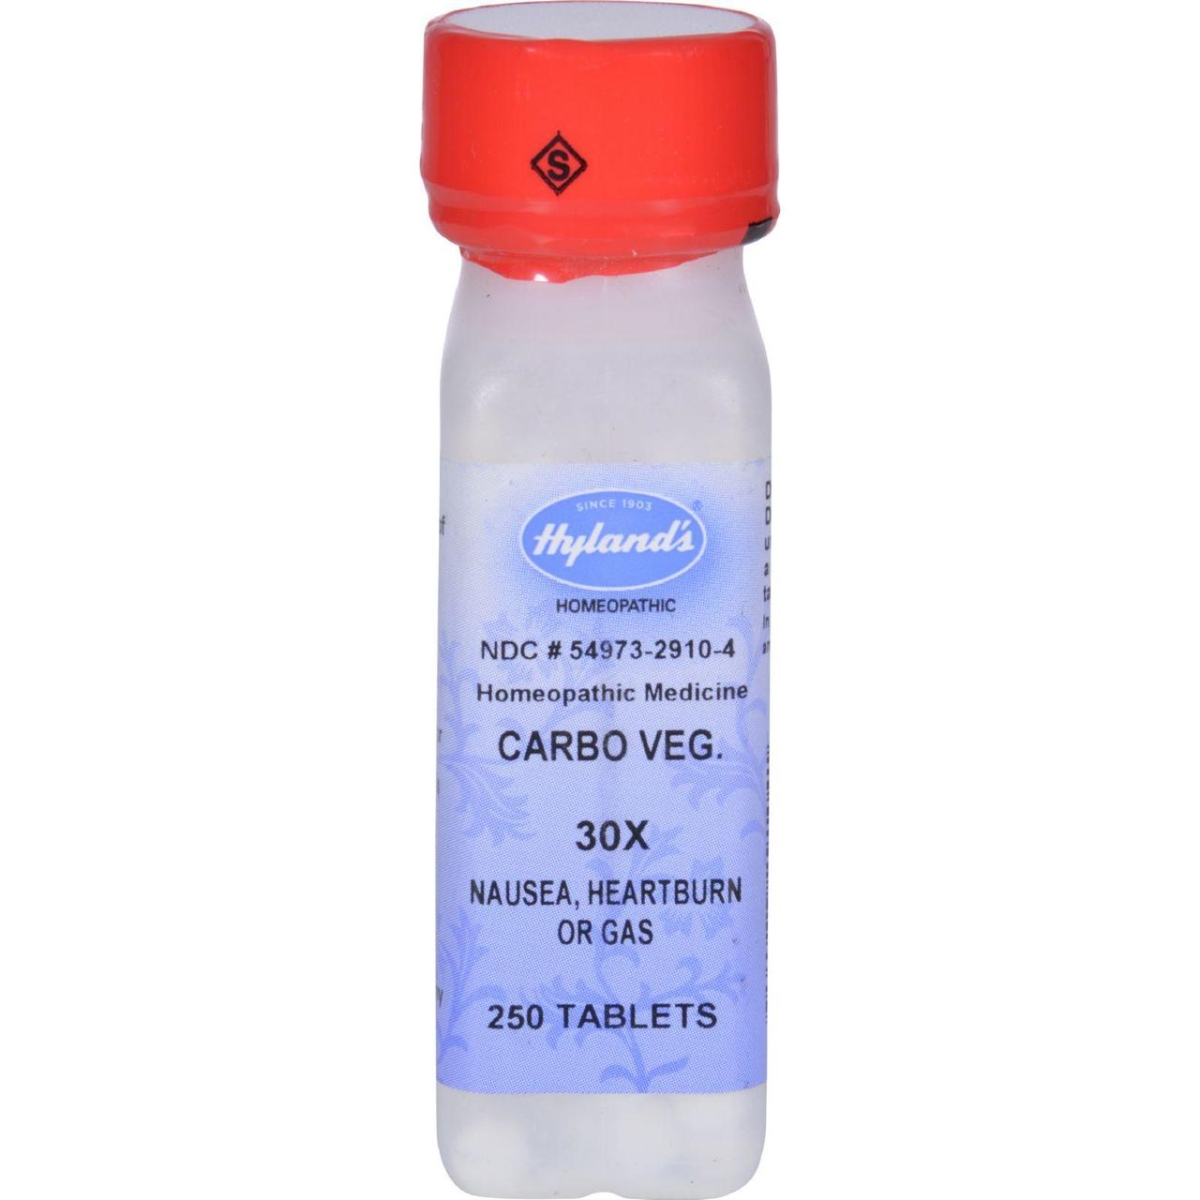 Hg0129981 Carbo Vegetabilis 30x, 250 Tablets